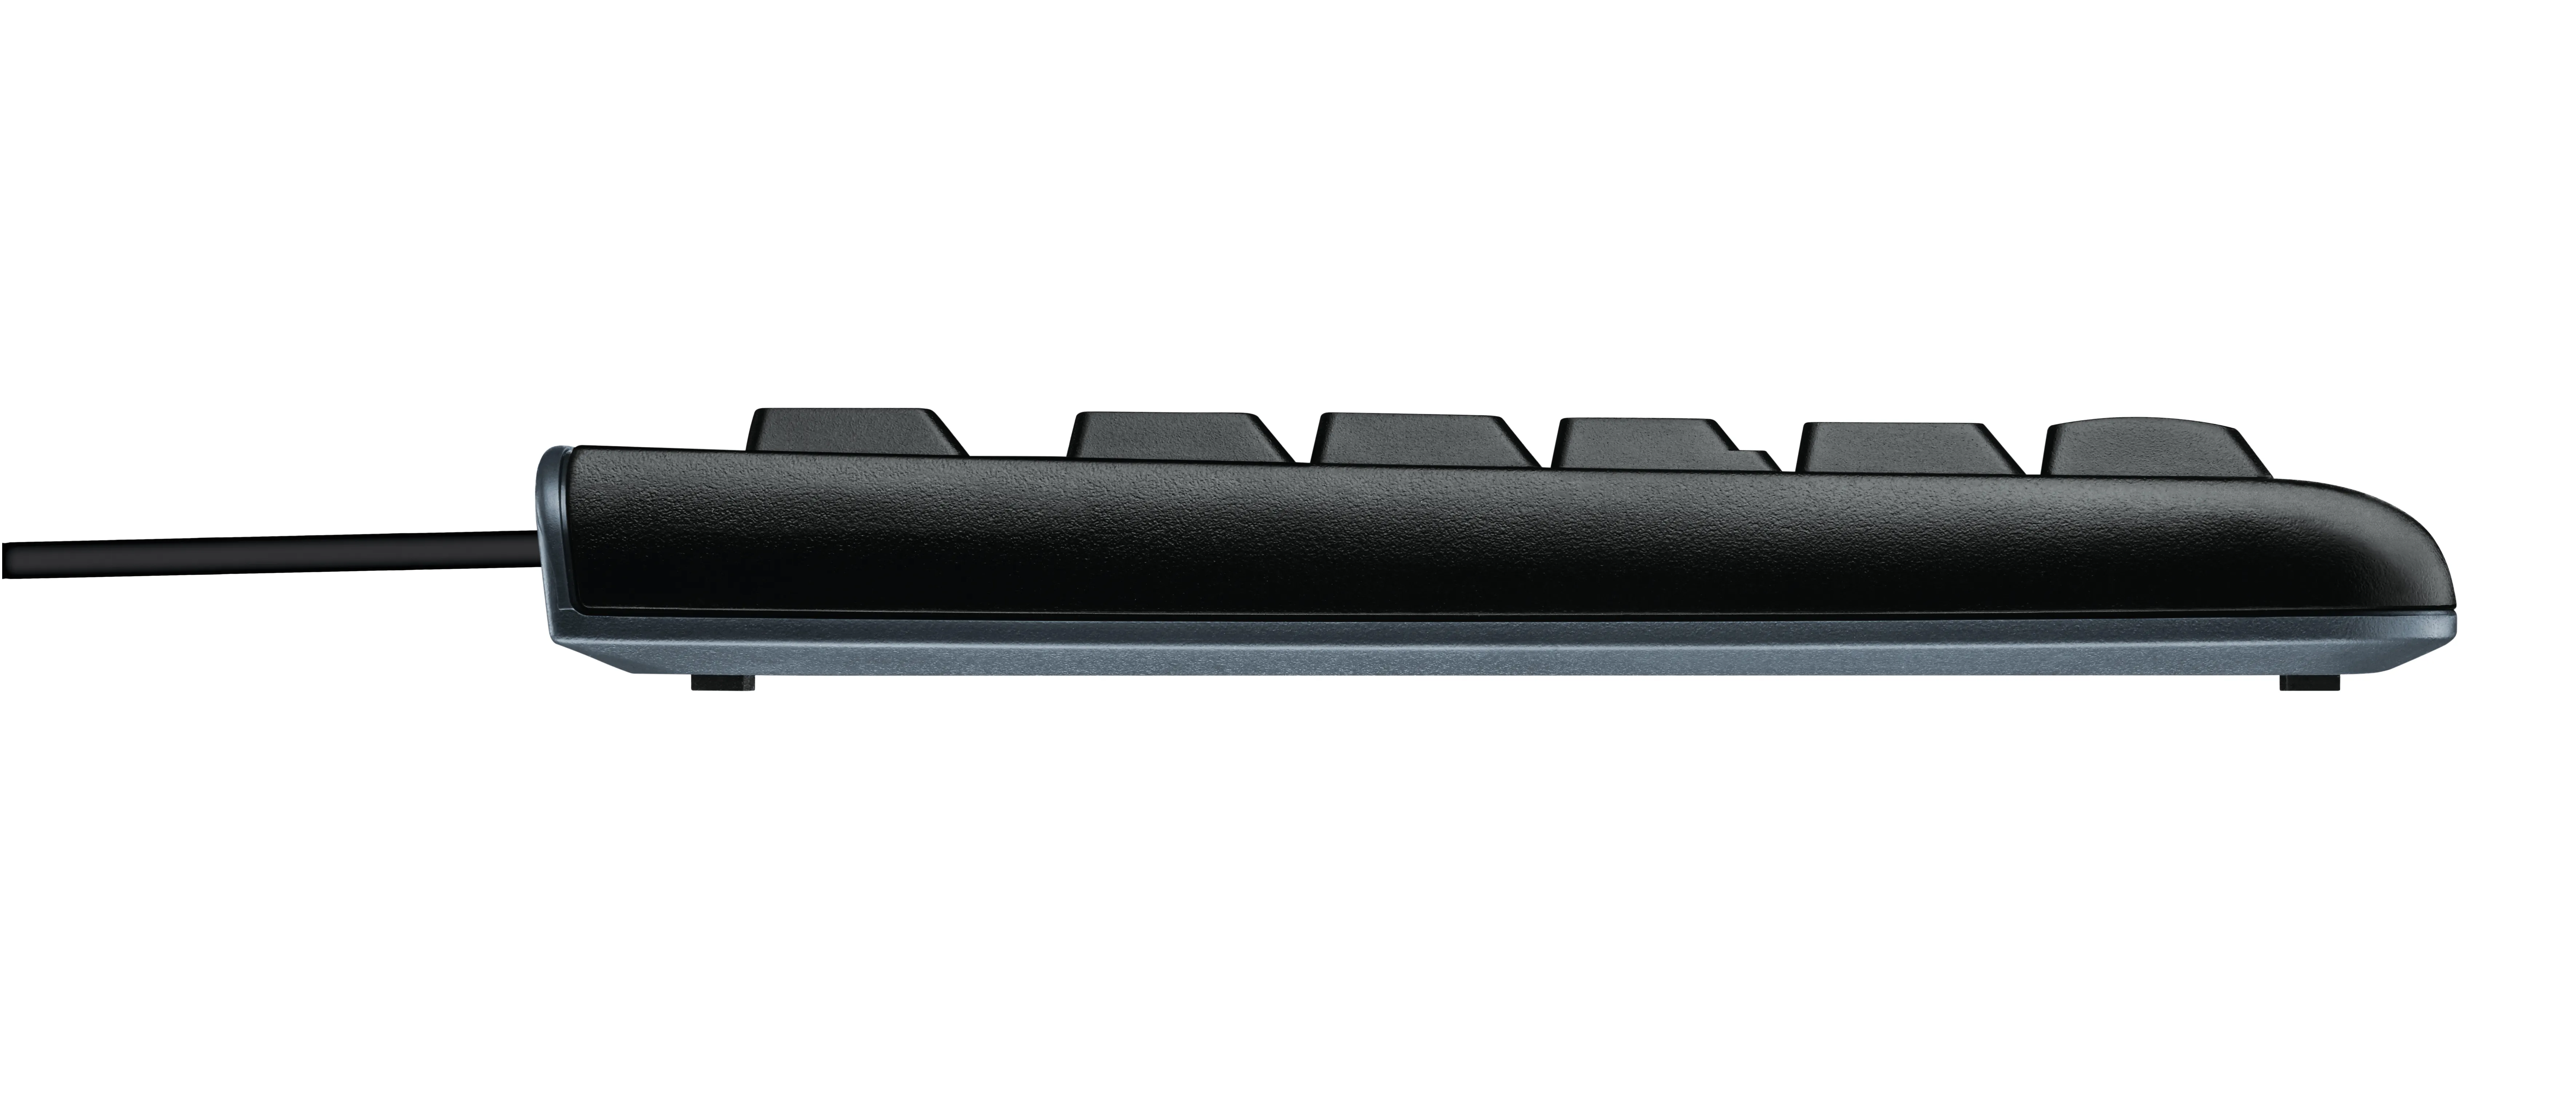 Vente Logitech K120 Corded Keyboard Logitech au meilleur prix - visuel 8